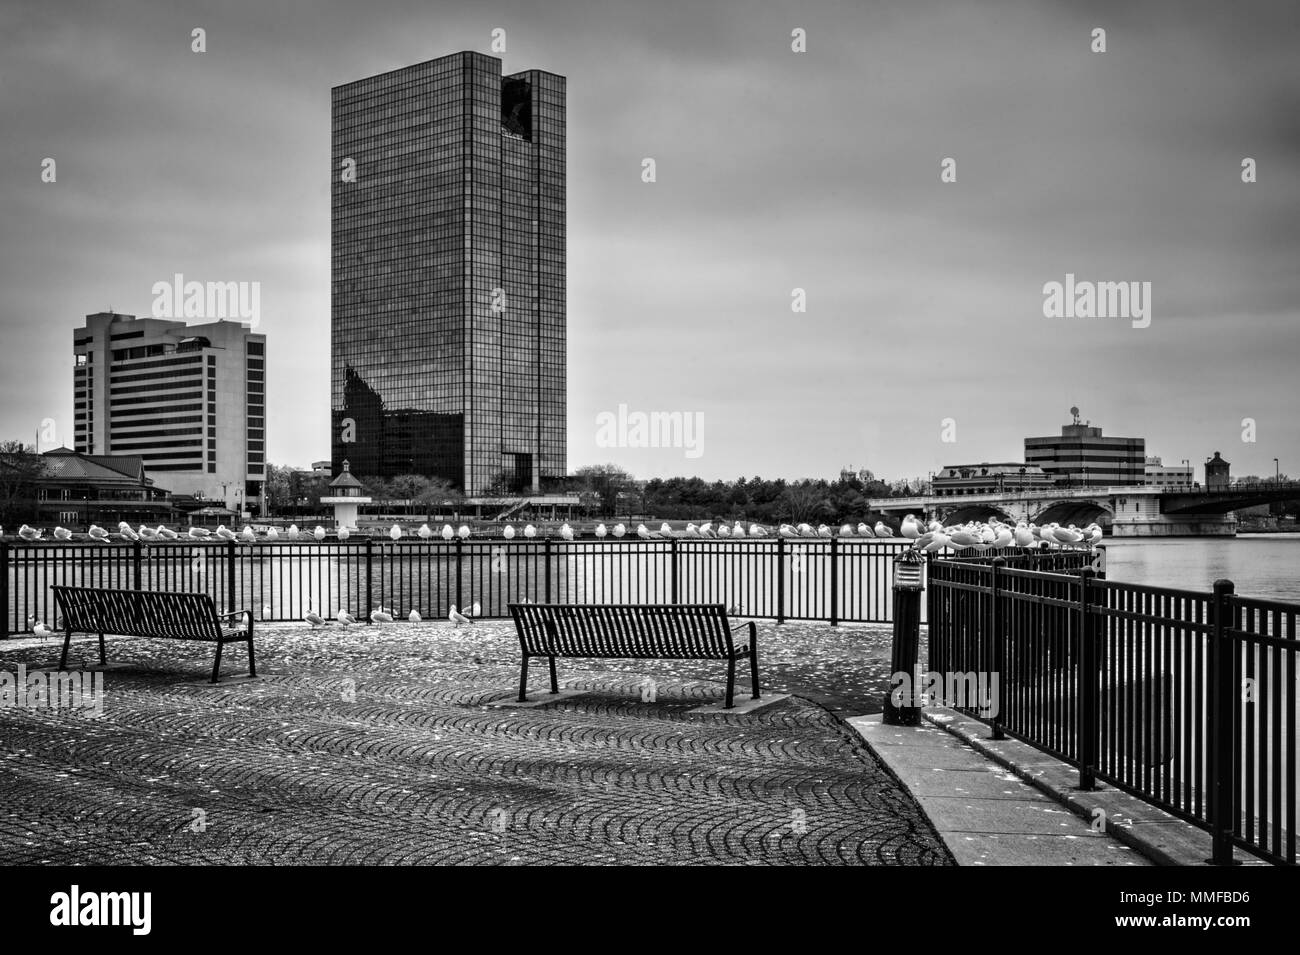 Toledo ohio skyline Black and White Stock Photos & Images Alamy